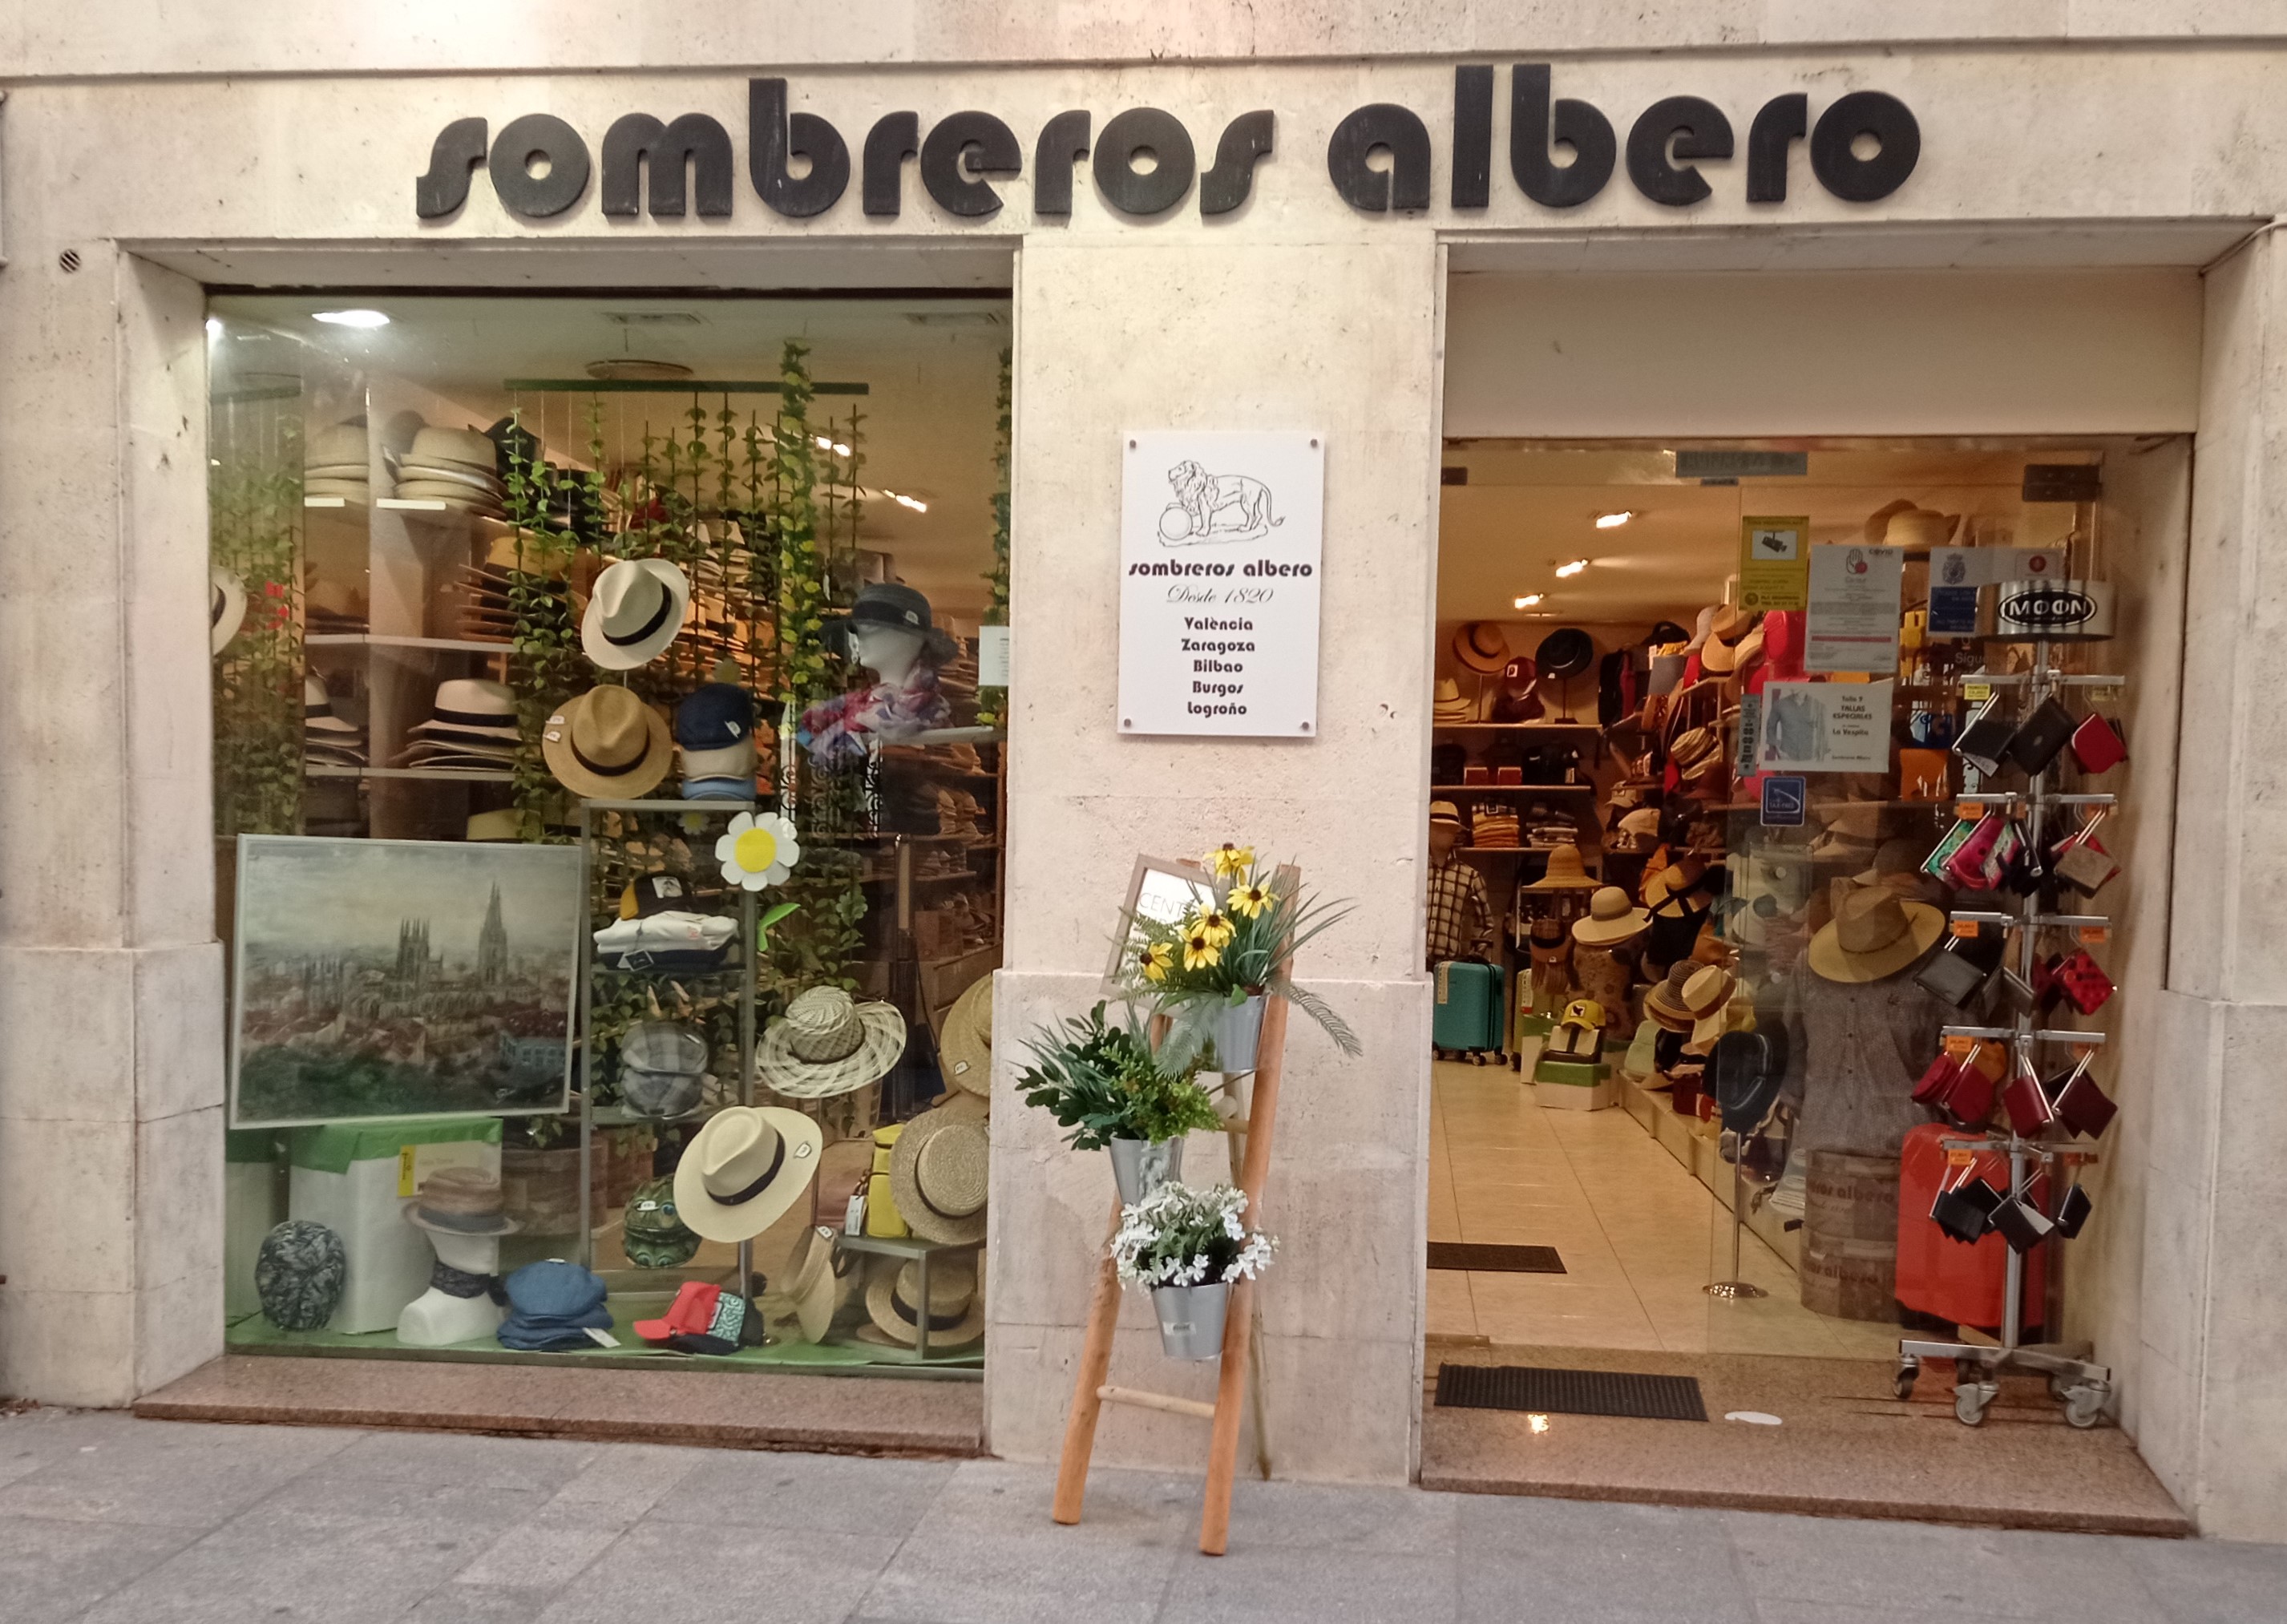 Sombreros Albero